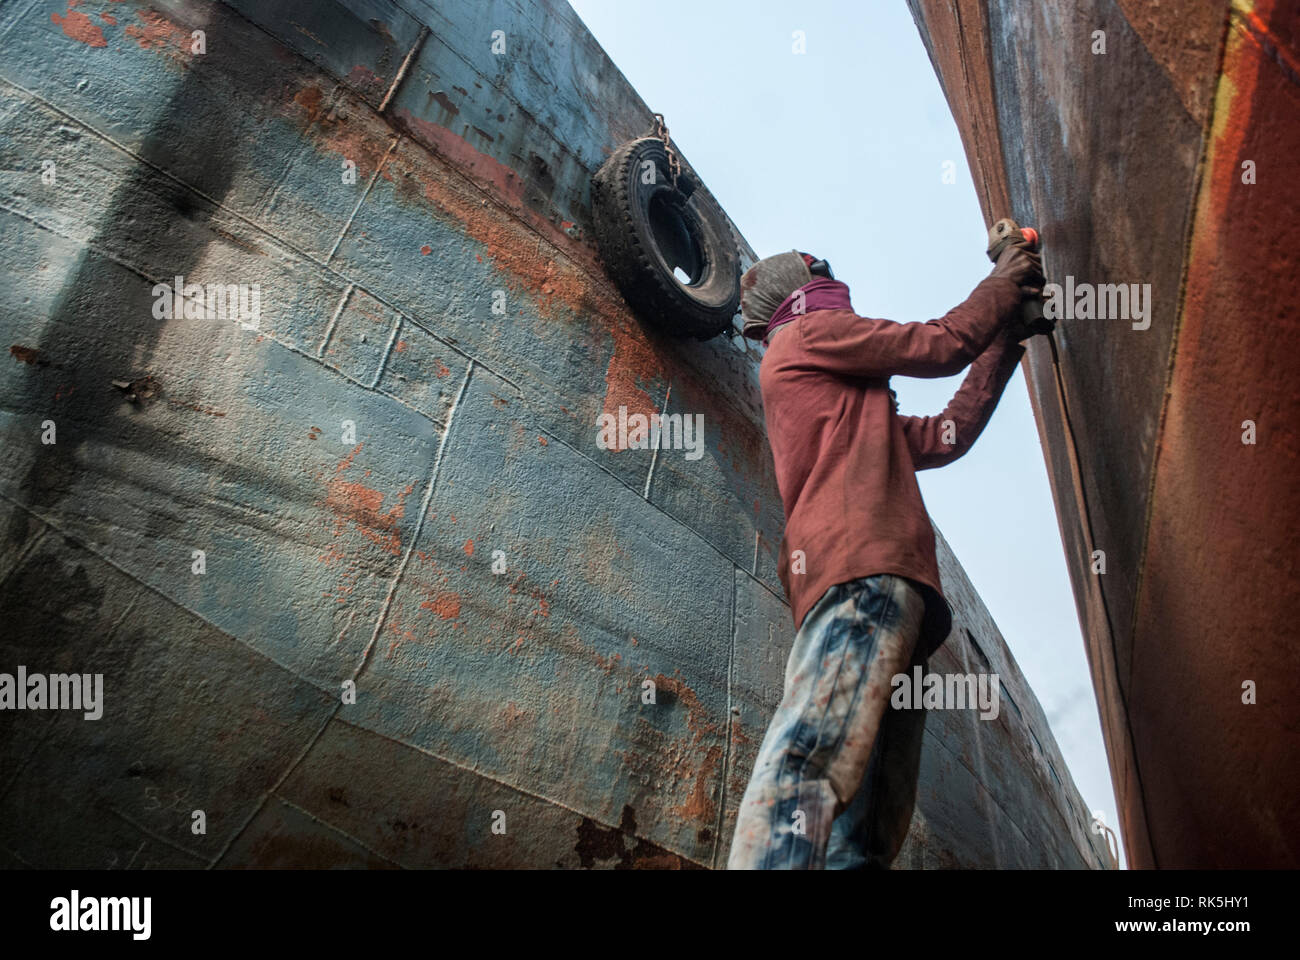 Travailleurs de quai ,06 february2019 dhaka Bangladesh, travailleurs de quai dans un chantier naval de Dhaka, au Bangladesh. La construction navale au Bangladesh est devenue une industrie majeure Banque D'Images